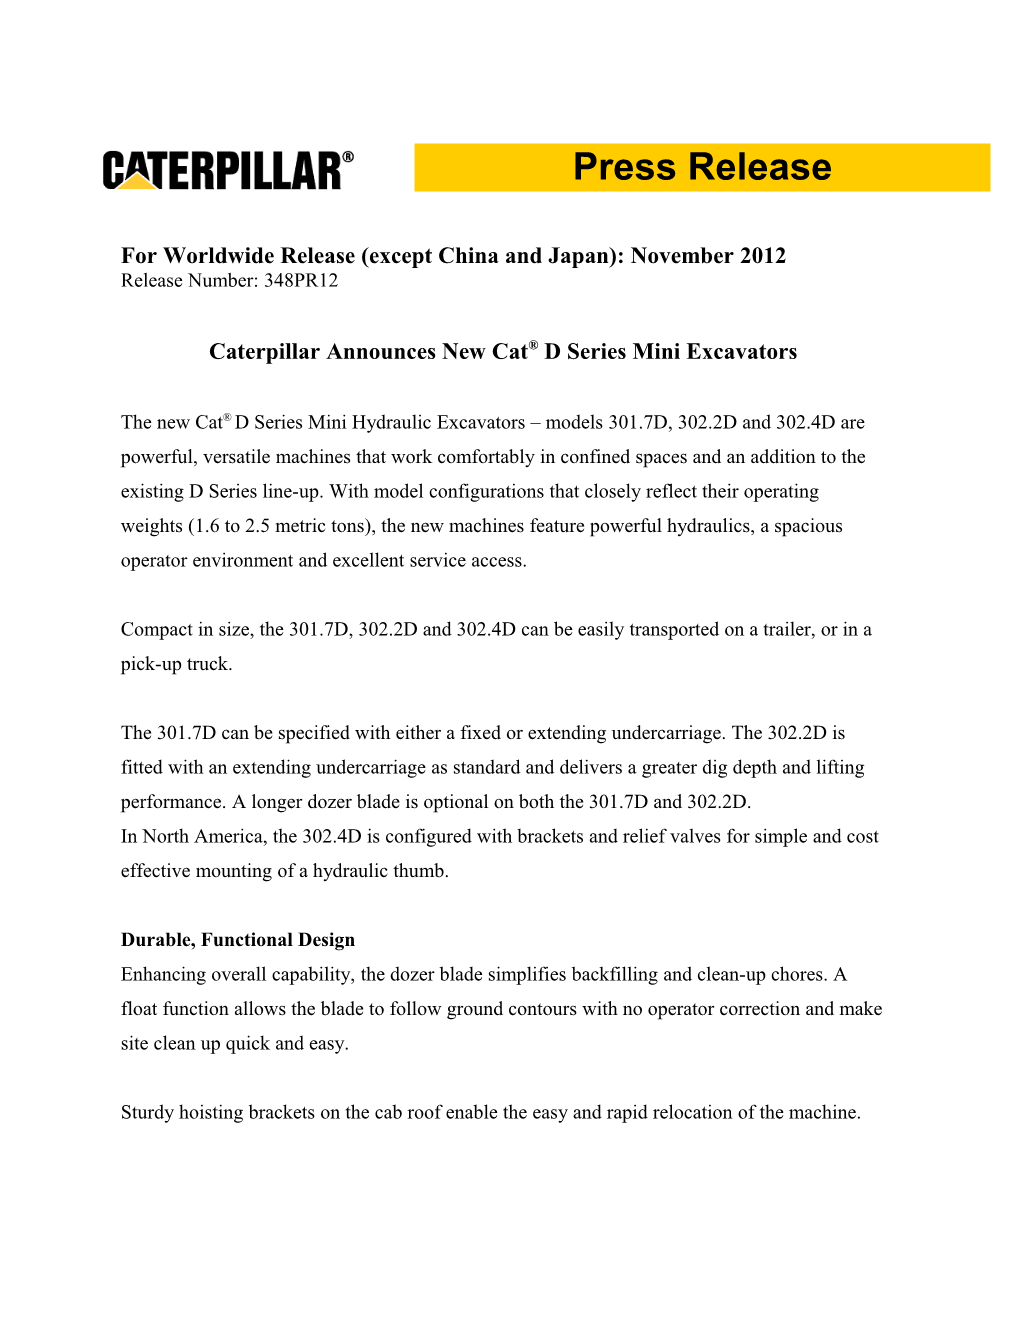 Caterpillar Announces New Cat Sup /Sup D Series Mini Excavators